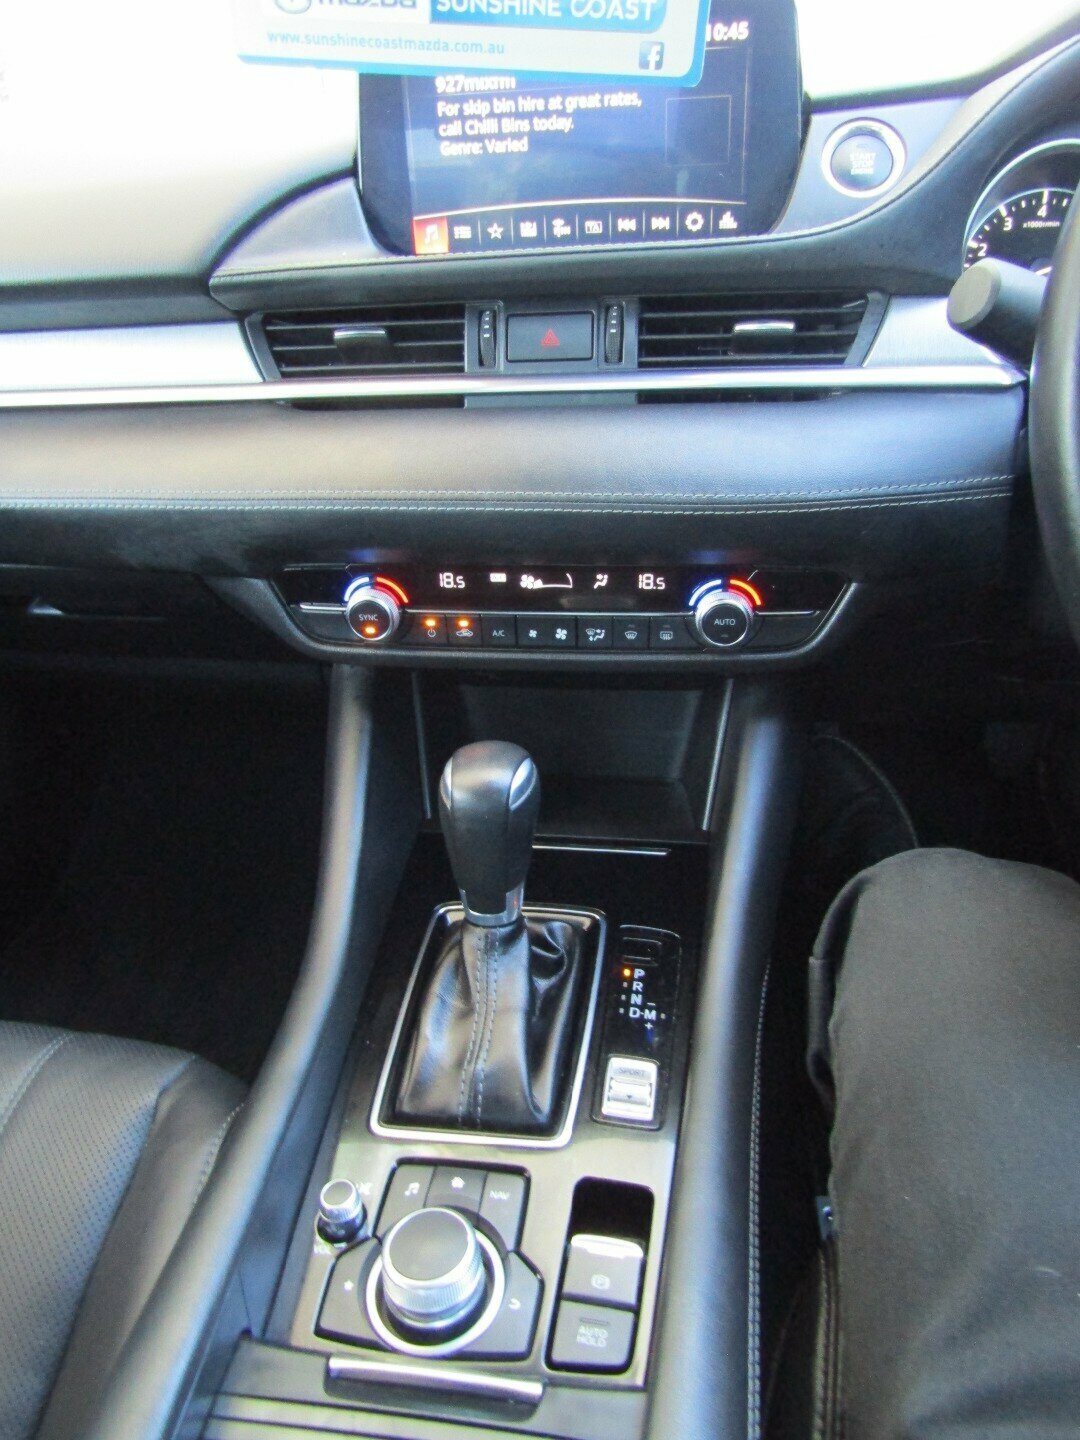 2019 Mazda 6 GL1032 Touring SKYACTIV-Drive Sedan Image 13